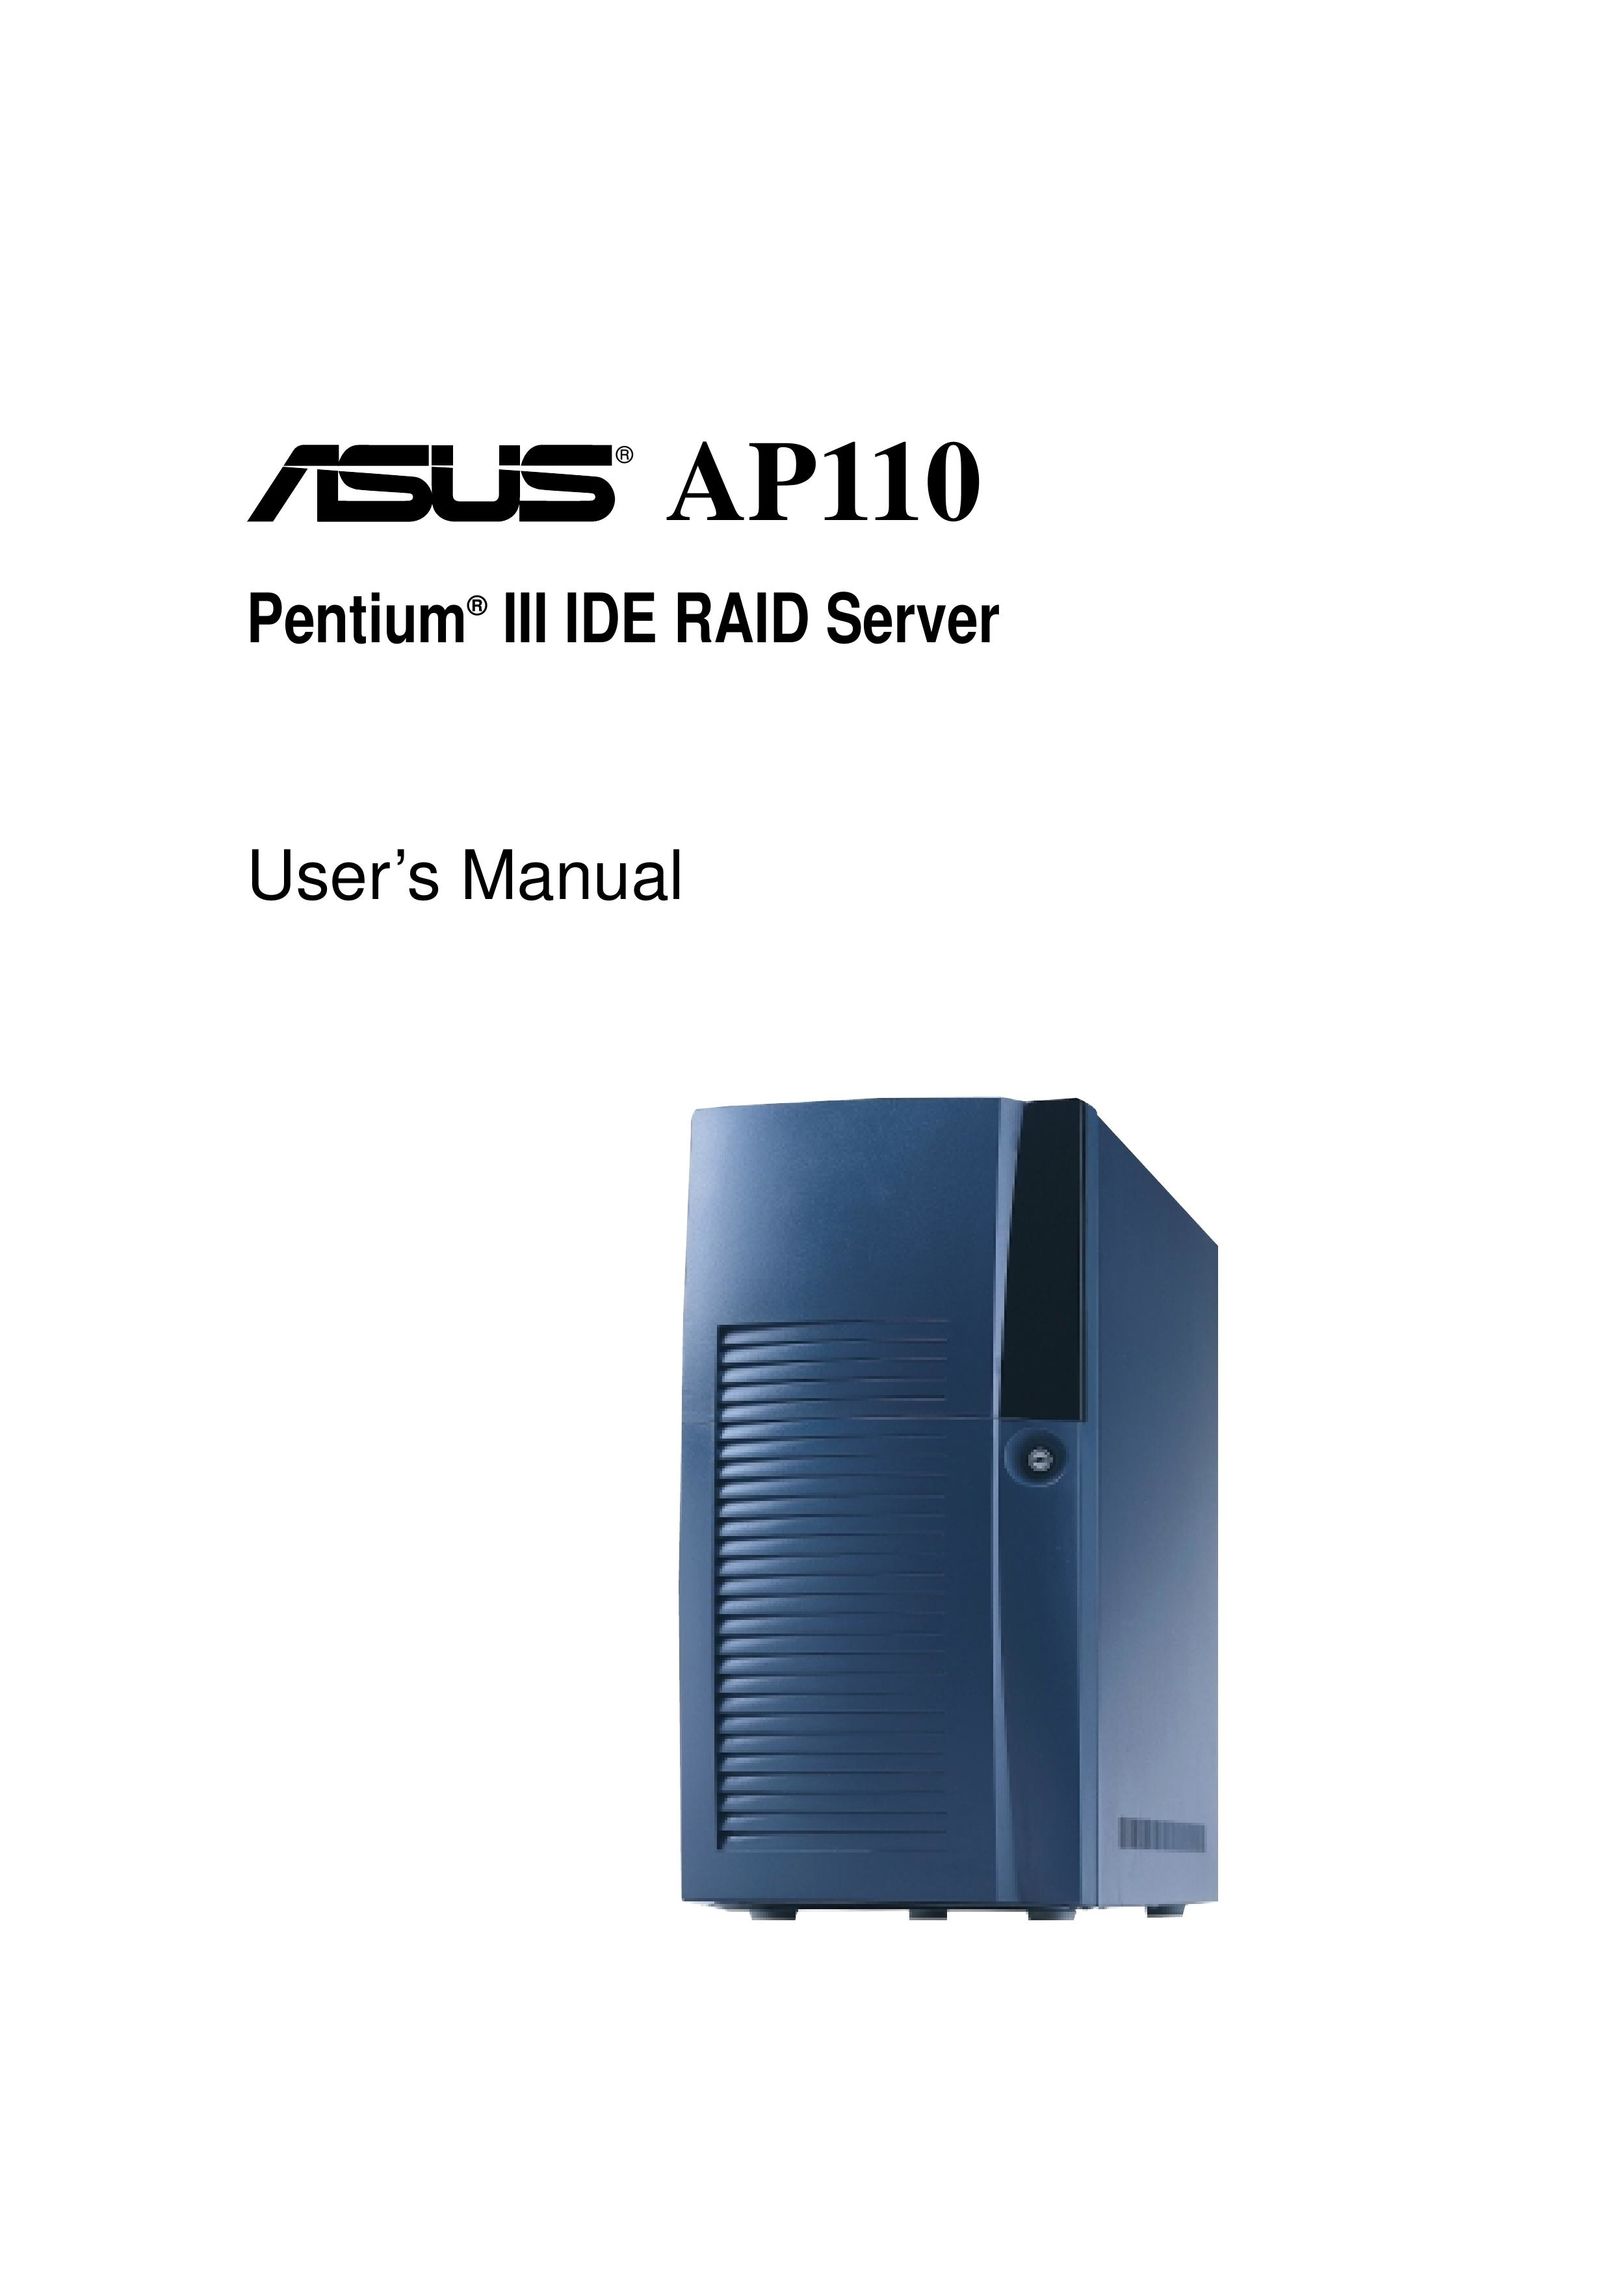 Asus AP110 Personal Computer User Manual